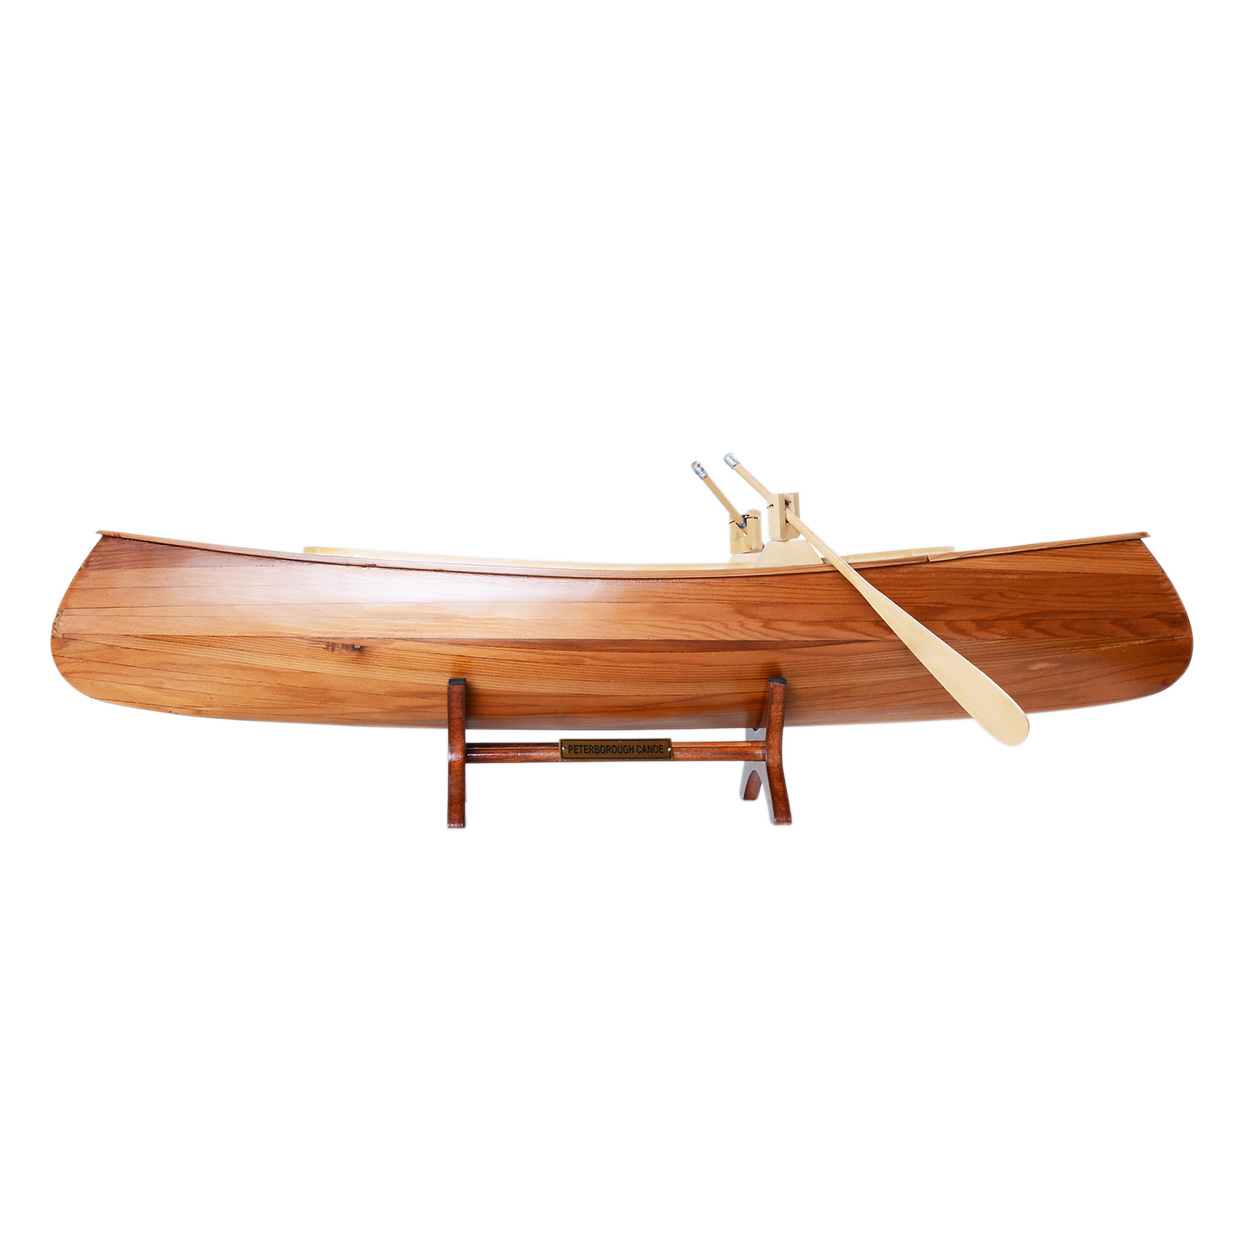 B016 Peterborough canoe B016L01.jpg